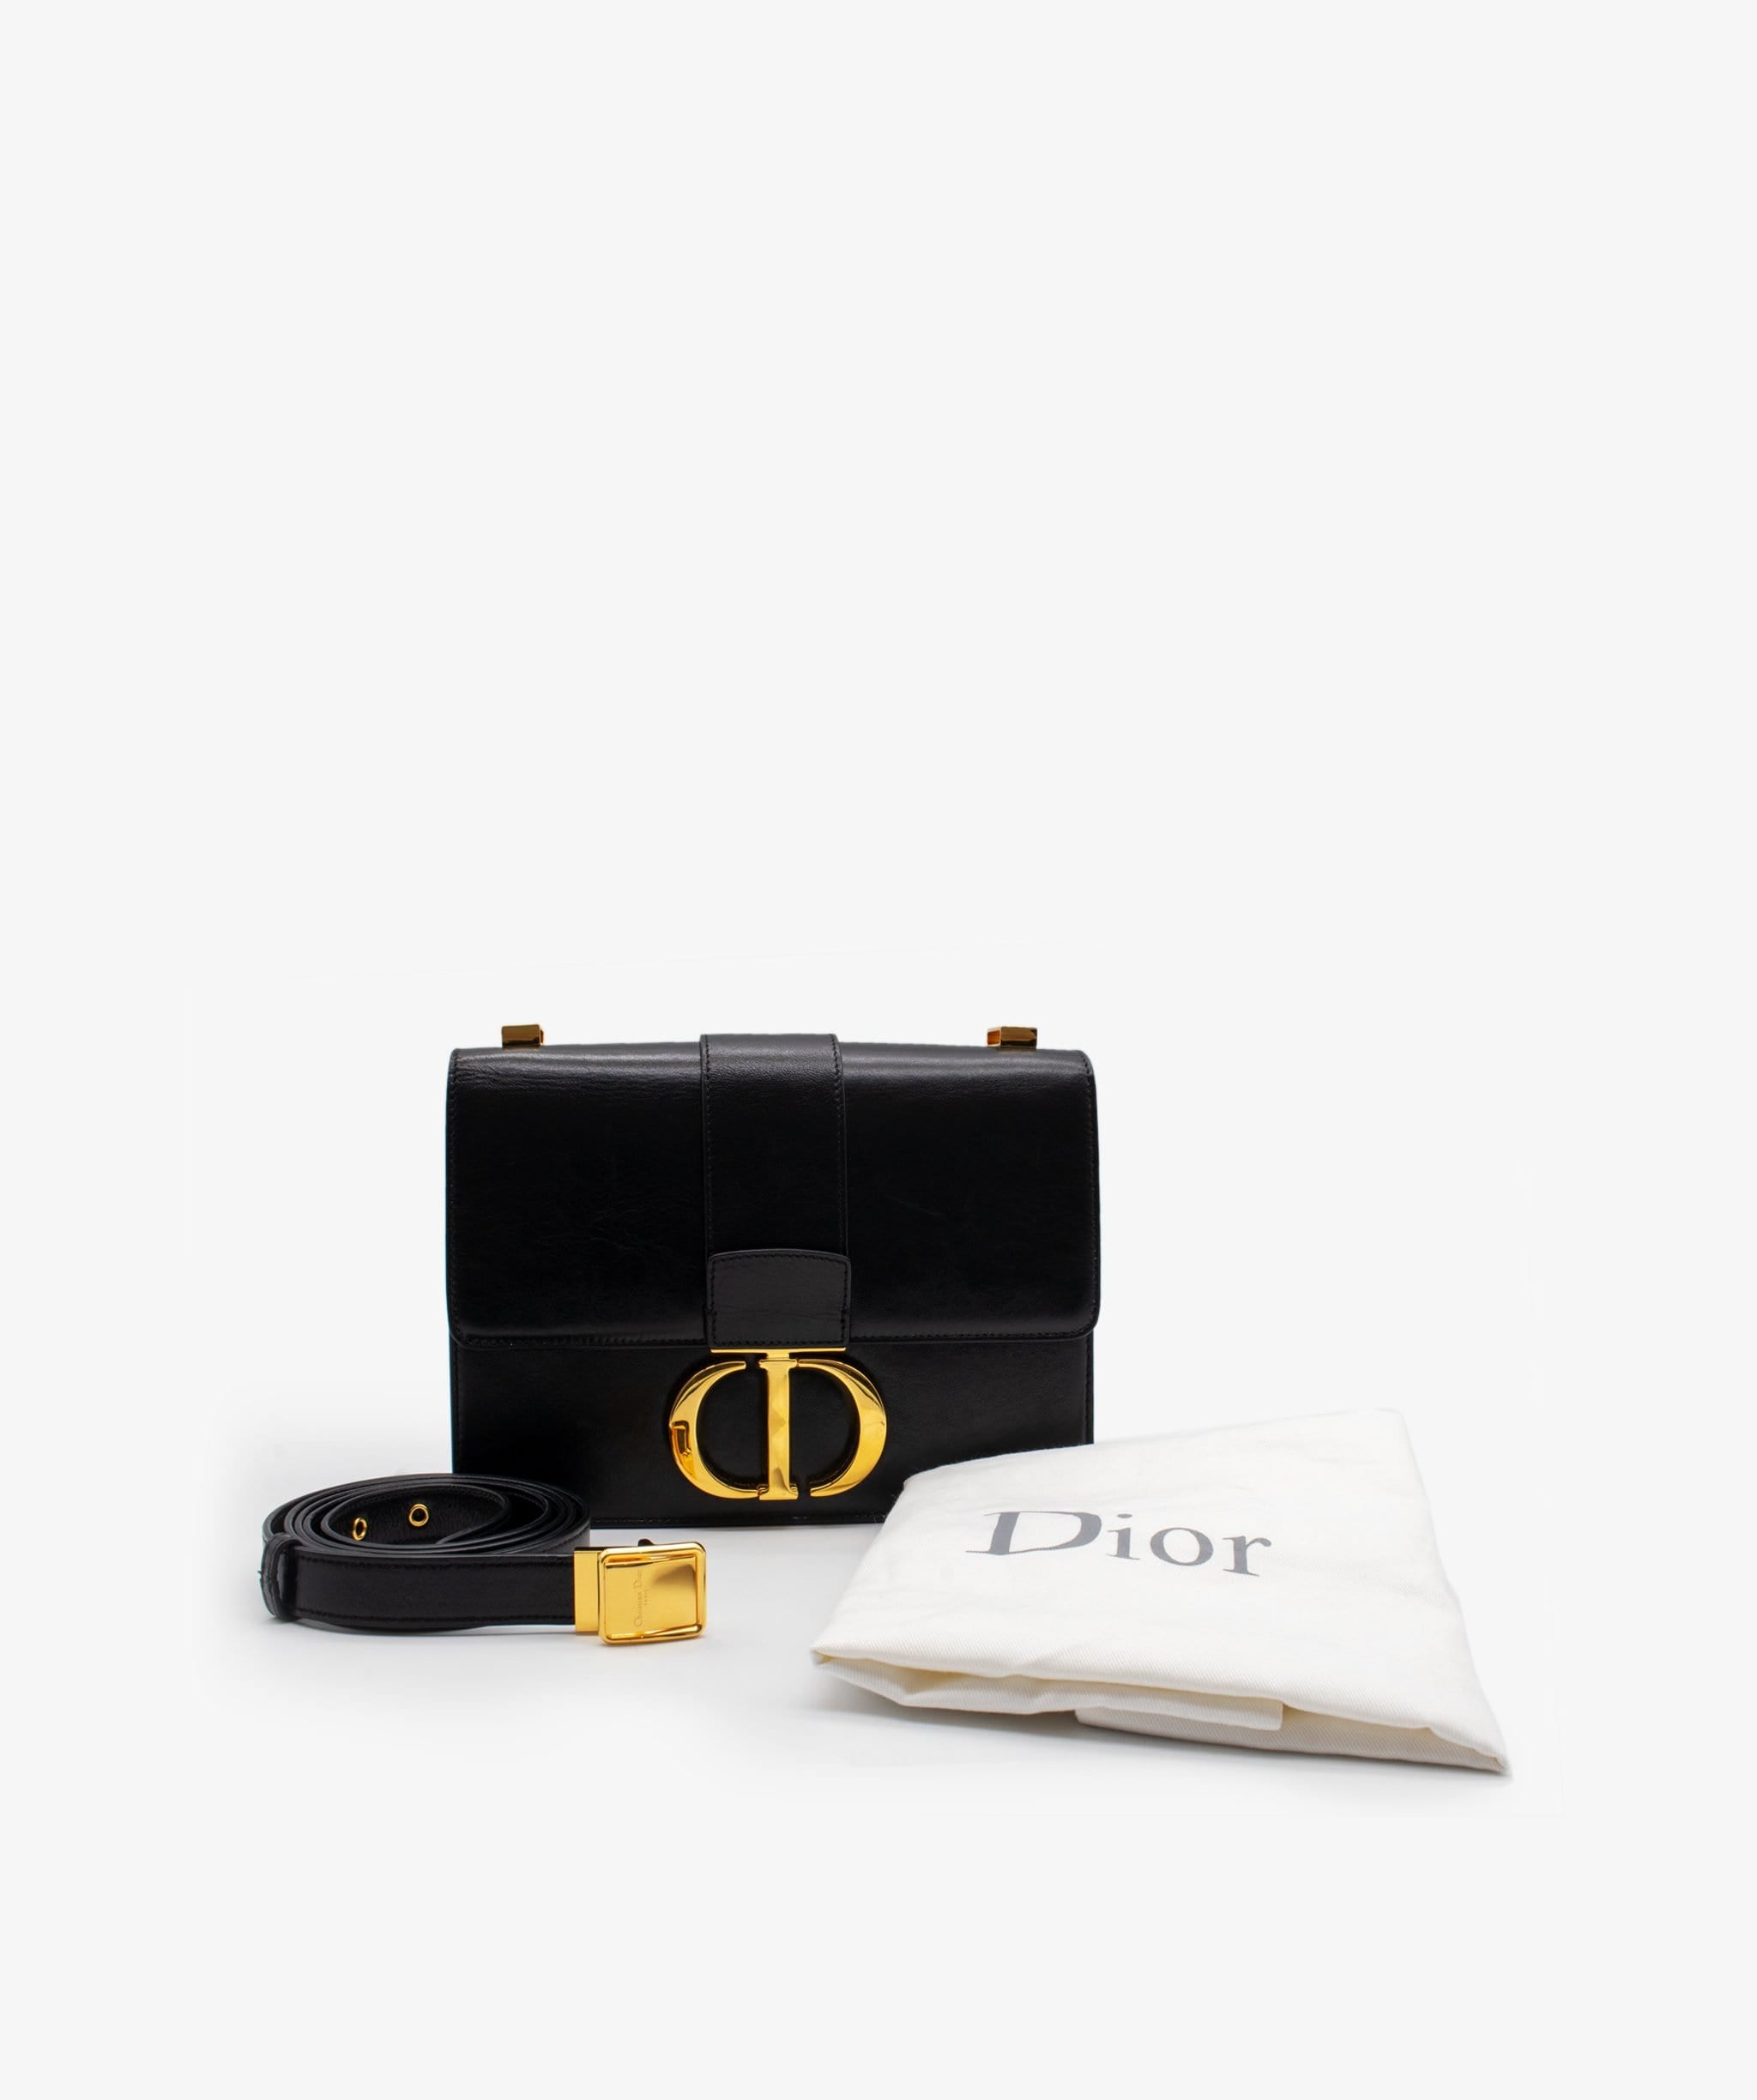 Christian Dior Christian Dior 30 Montaigne Shoulder Bag